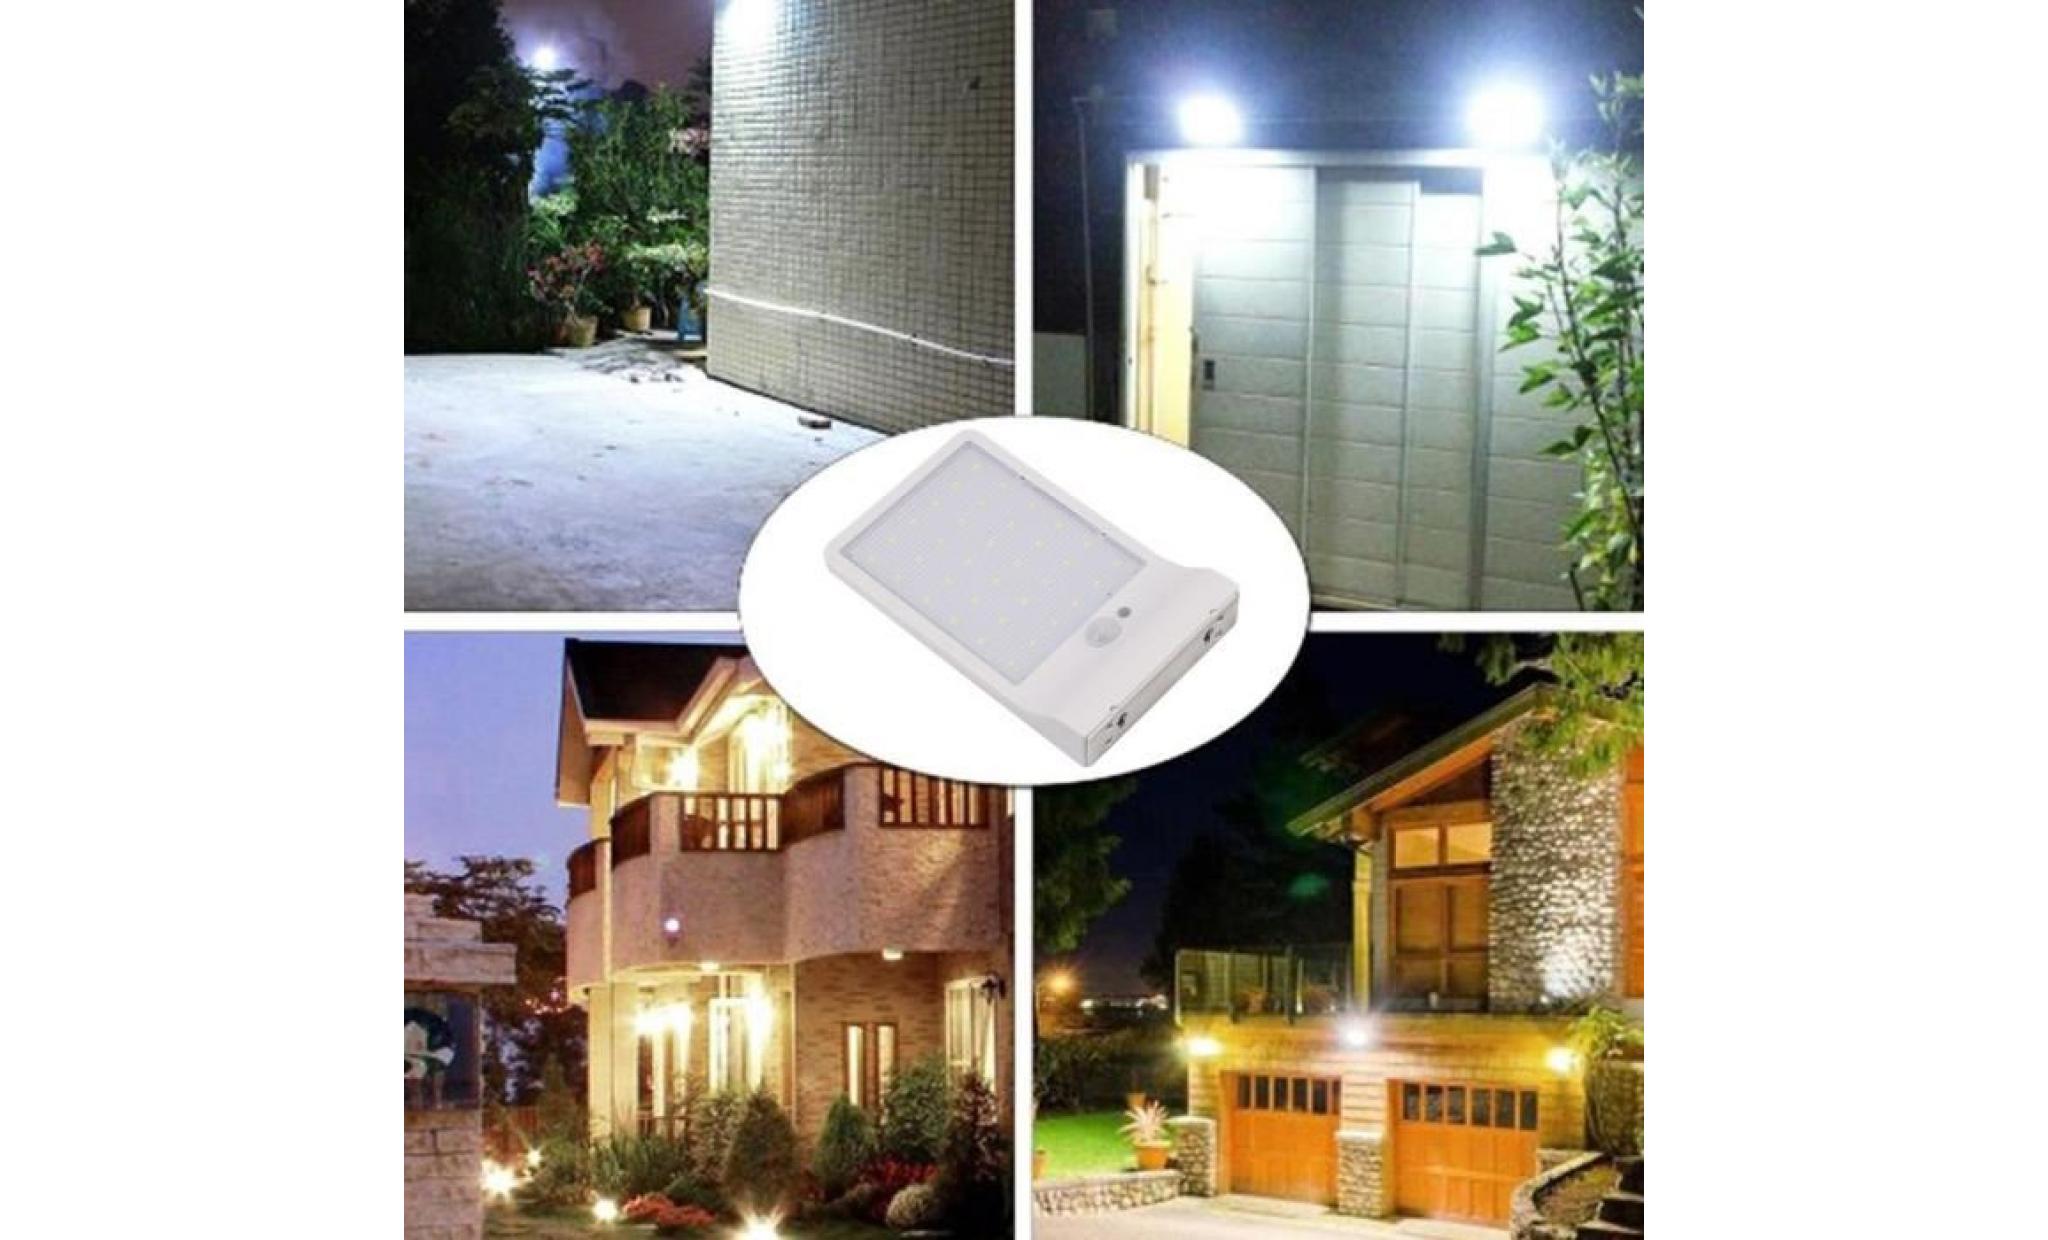 borne solaire lumière imperméable de lampe de sécurité de jardin de capteur de mouvement actionné solaire de led #si 141 pas cher